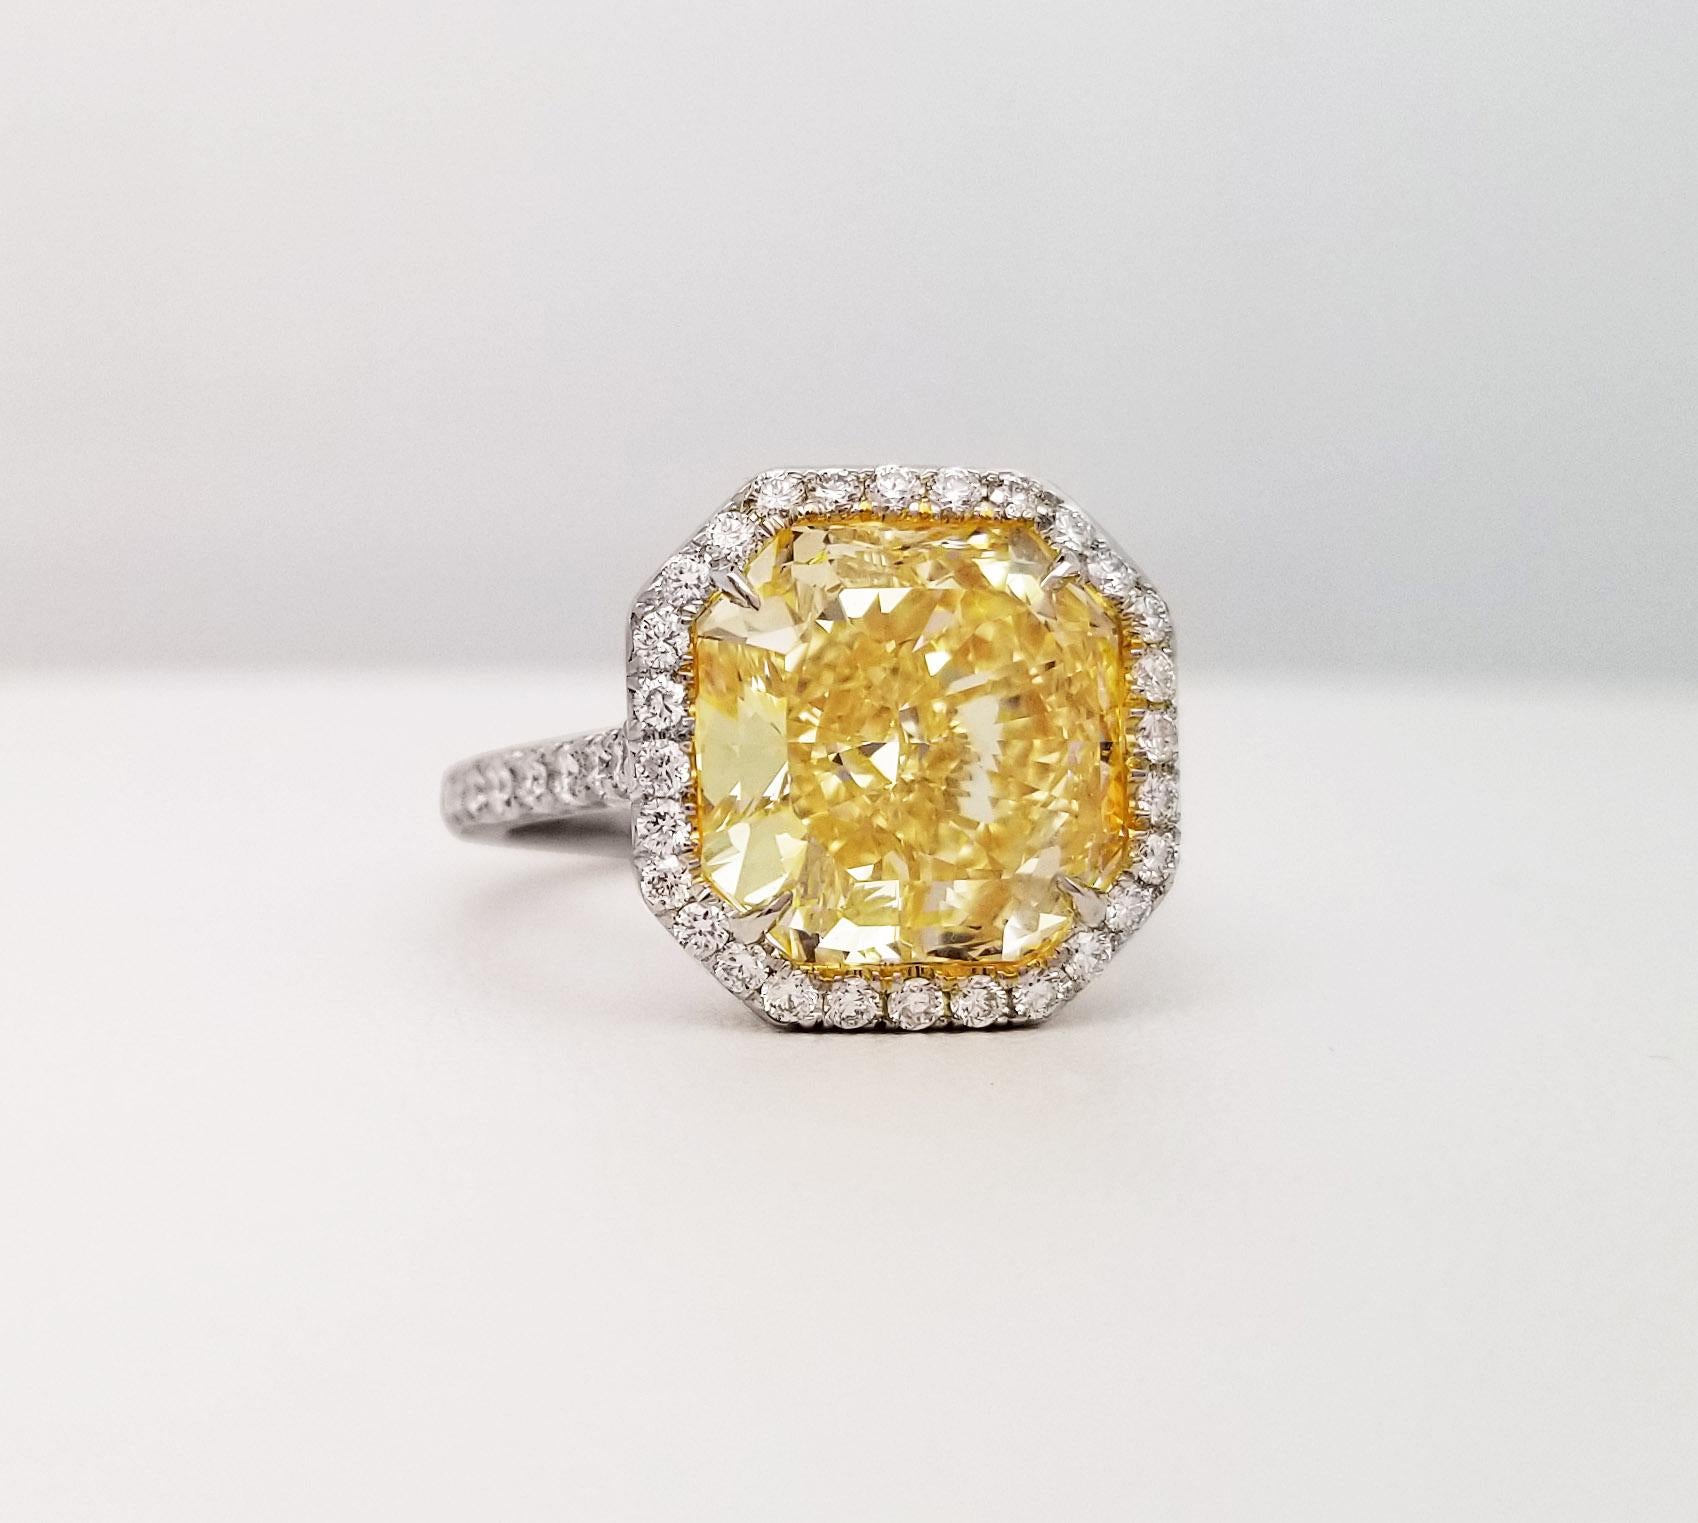 Von SCARSELLI, diese spektakuläre 6 Karat Fancy Yellow Diamond Internally flawless GIA-zertifiziert haloing von runden weißen Diamanten, die sich auf den Seiten des Schaftes insgesamt 1,13 Karat (siehe Zertifikat Bild für detaillierte Informationen